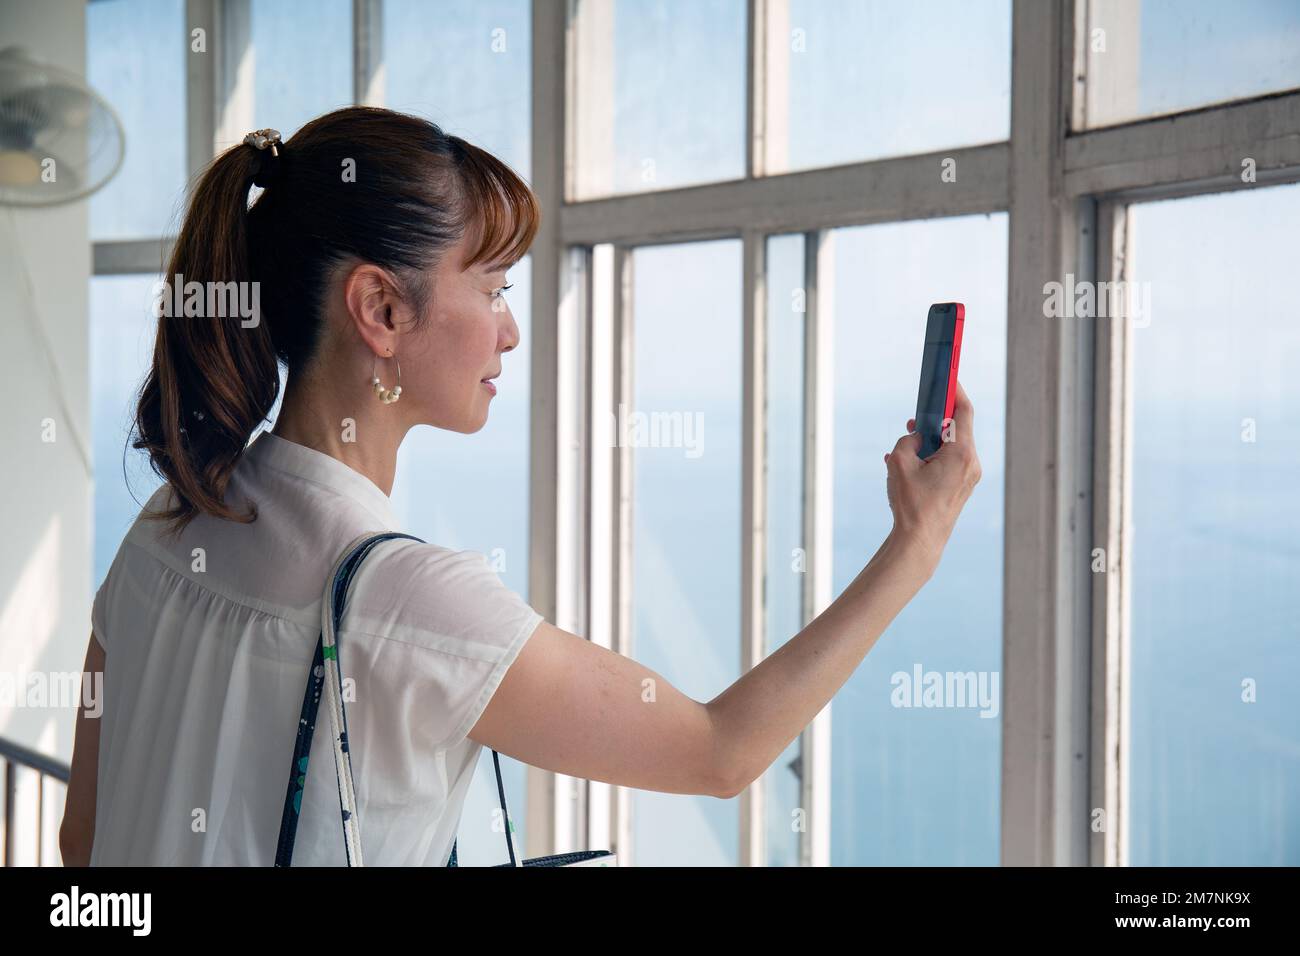 Eine reife japanische Frau, die mit ihrem Mobiltelefon Fotos von einer Aussichtsplattform der Stadt und der Landschaft darunter machte. Stockfoto